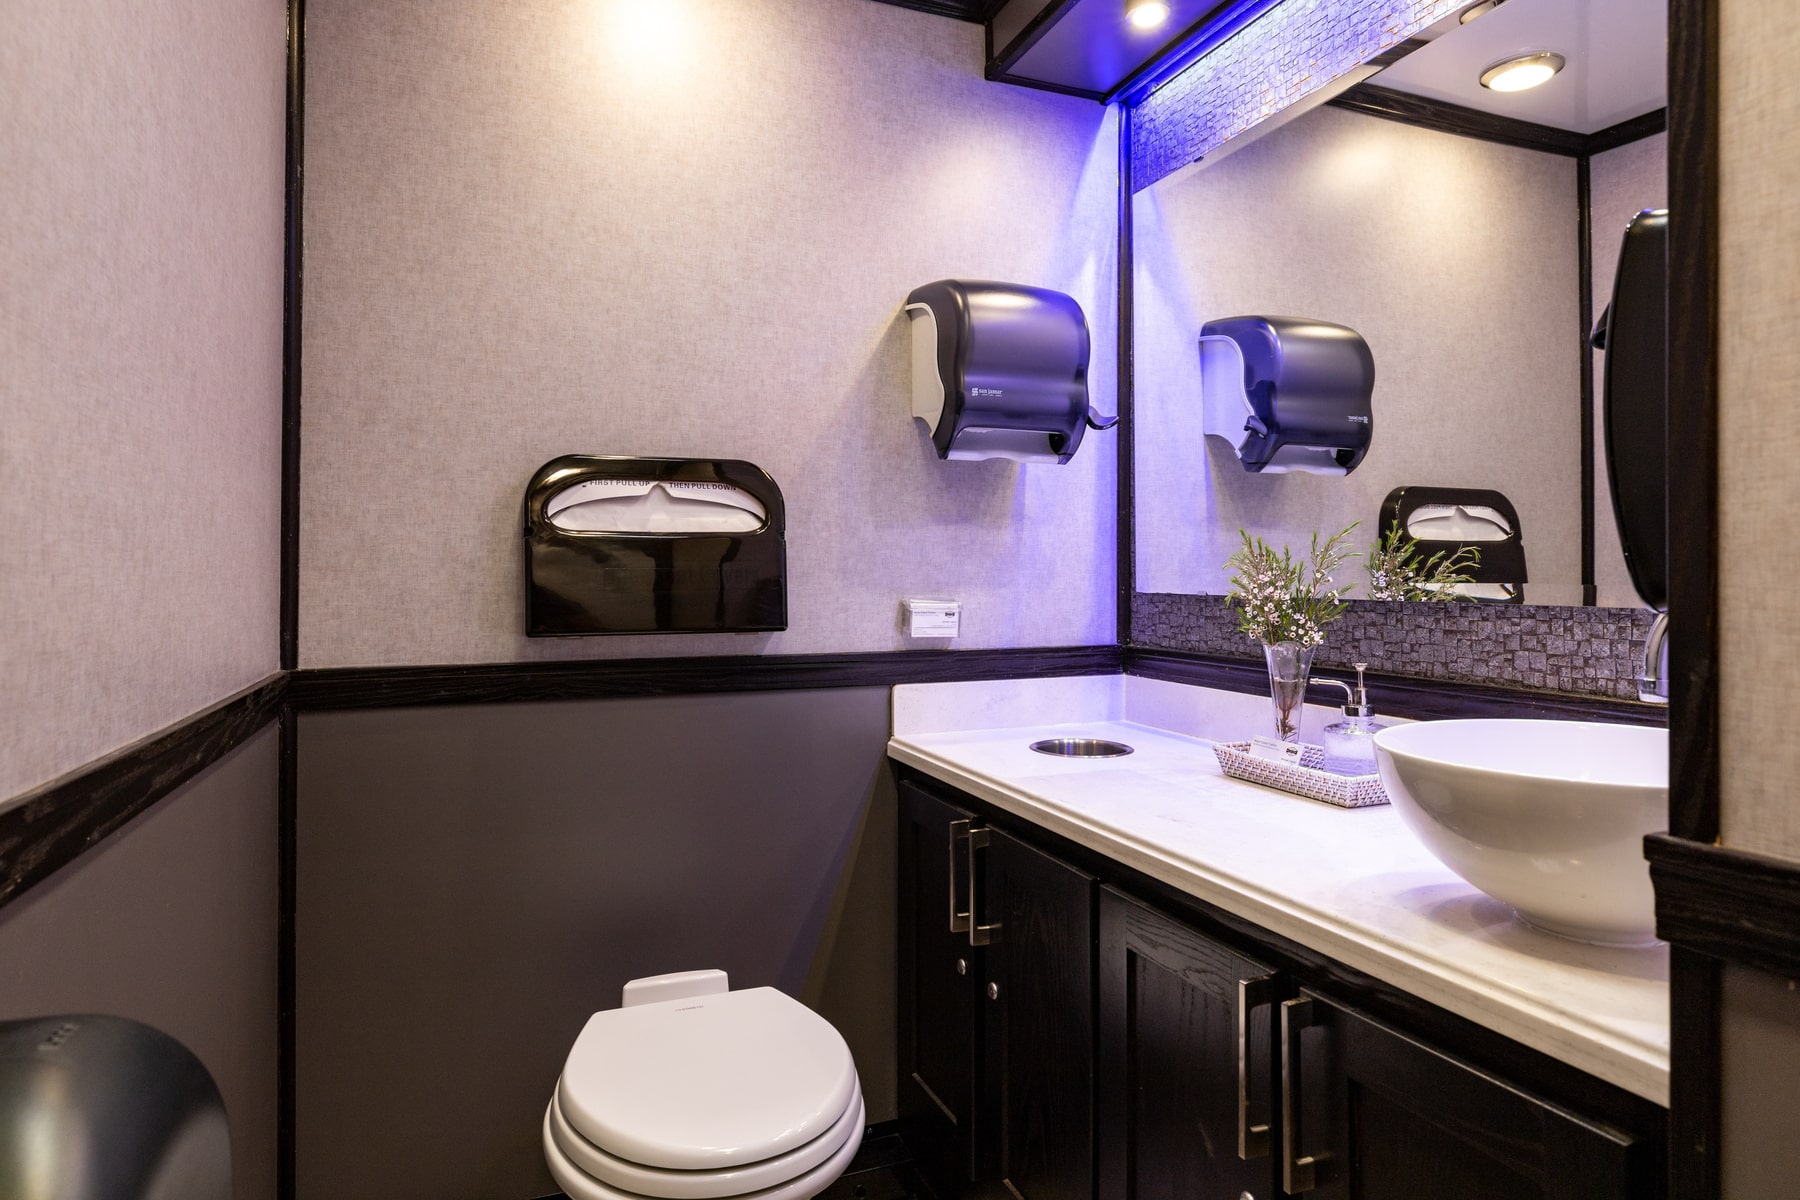 5-Station Luxury Restroom Trailer Rental – Interior View 1